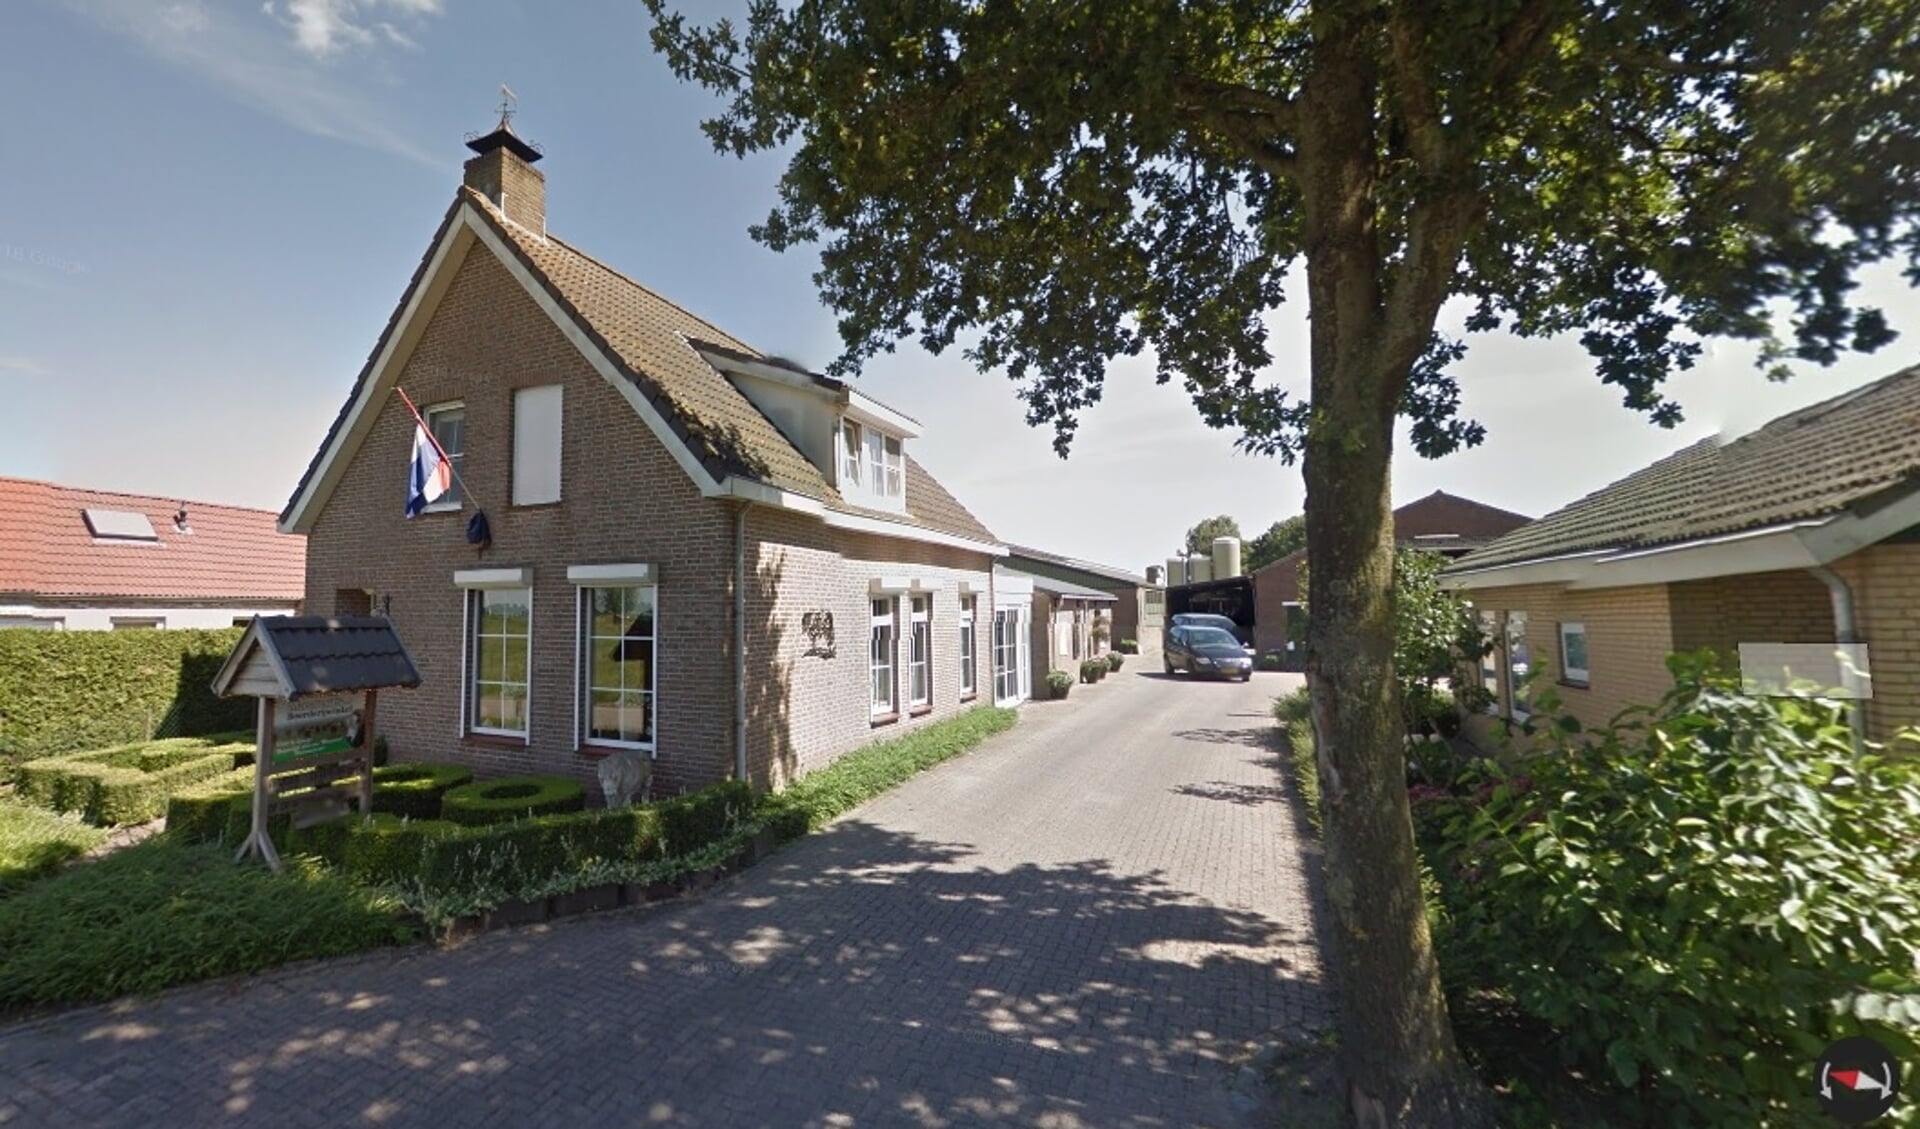  Vleesveebedrijf en boerderijwinkel Van Masseurs aan de Barlaqueseweg in Oud Gastel mag haar winkel en stallen uitbreiden.